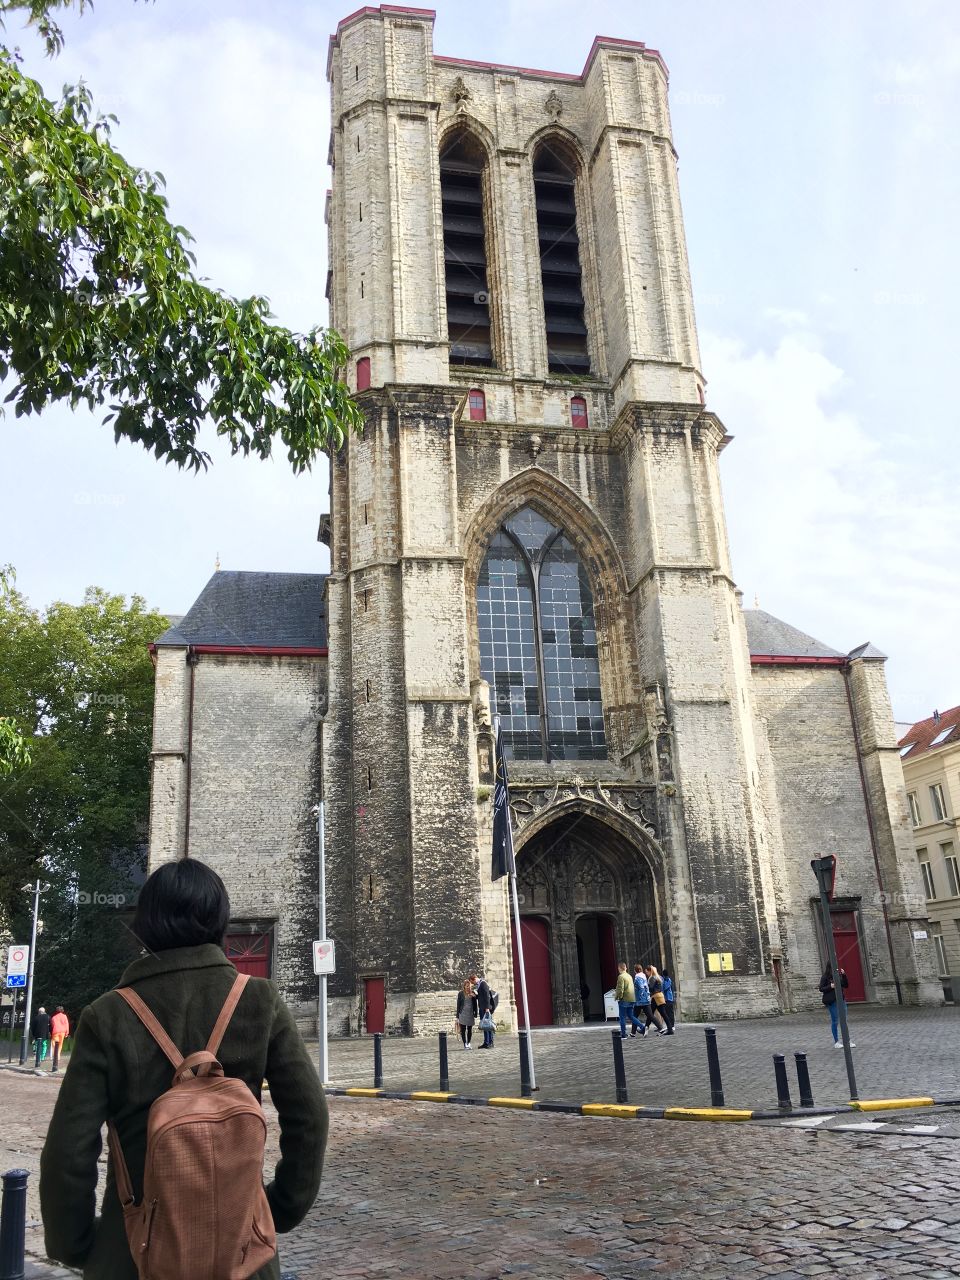 My journey in Belgium